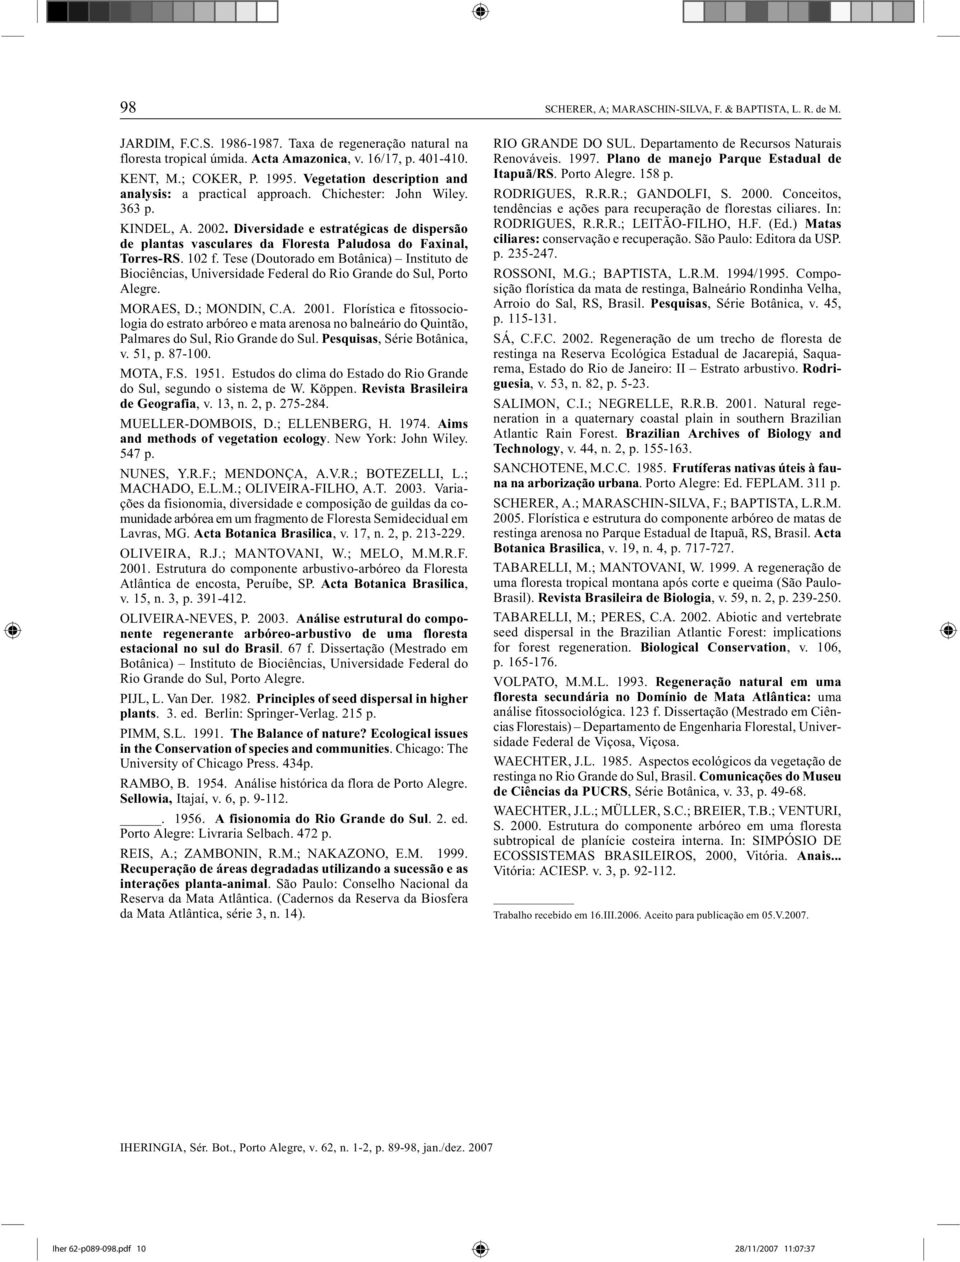 Diversidade e estratégicas de dispersão de plantas vasculares da Floresta Paludosa do Faxinal, Torres-RS. 102 f.